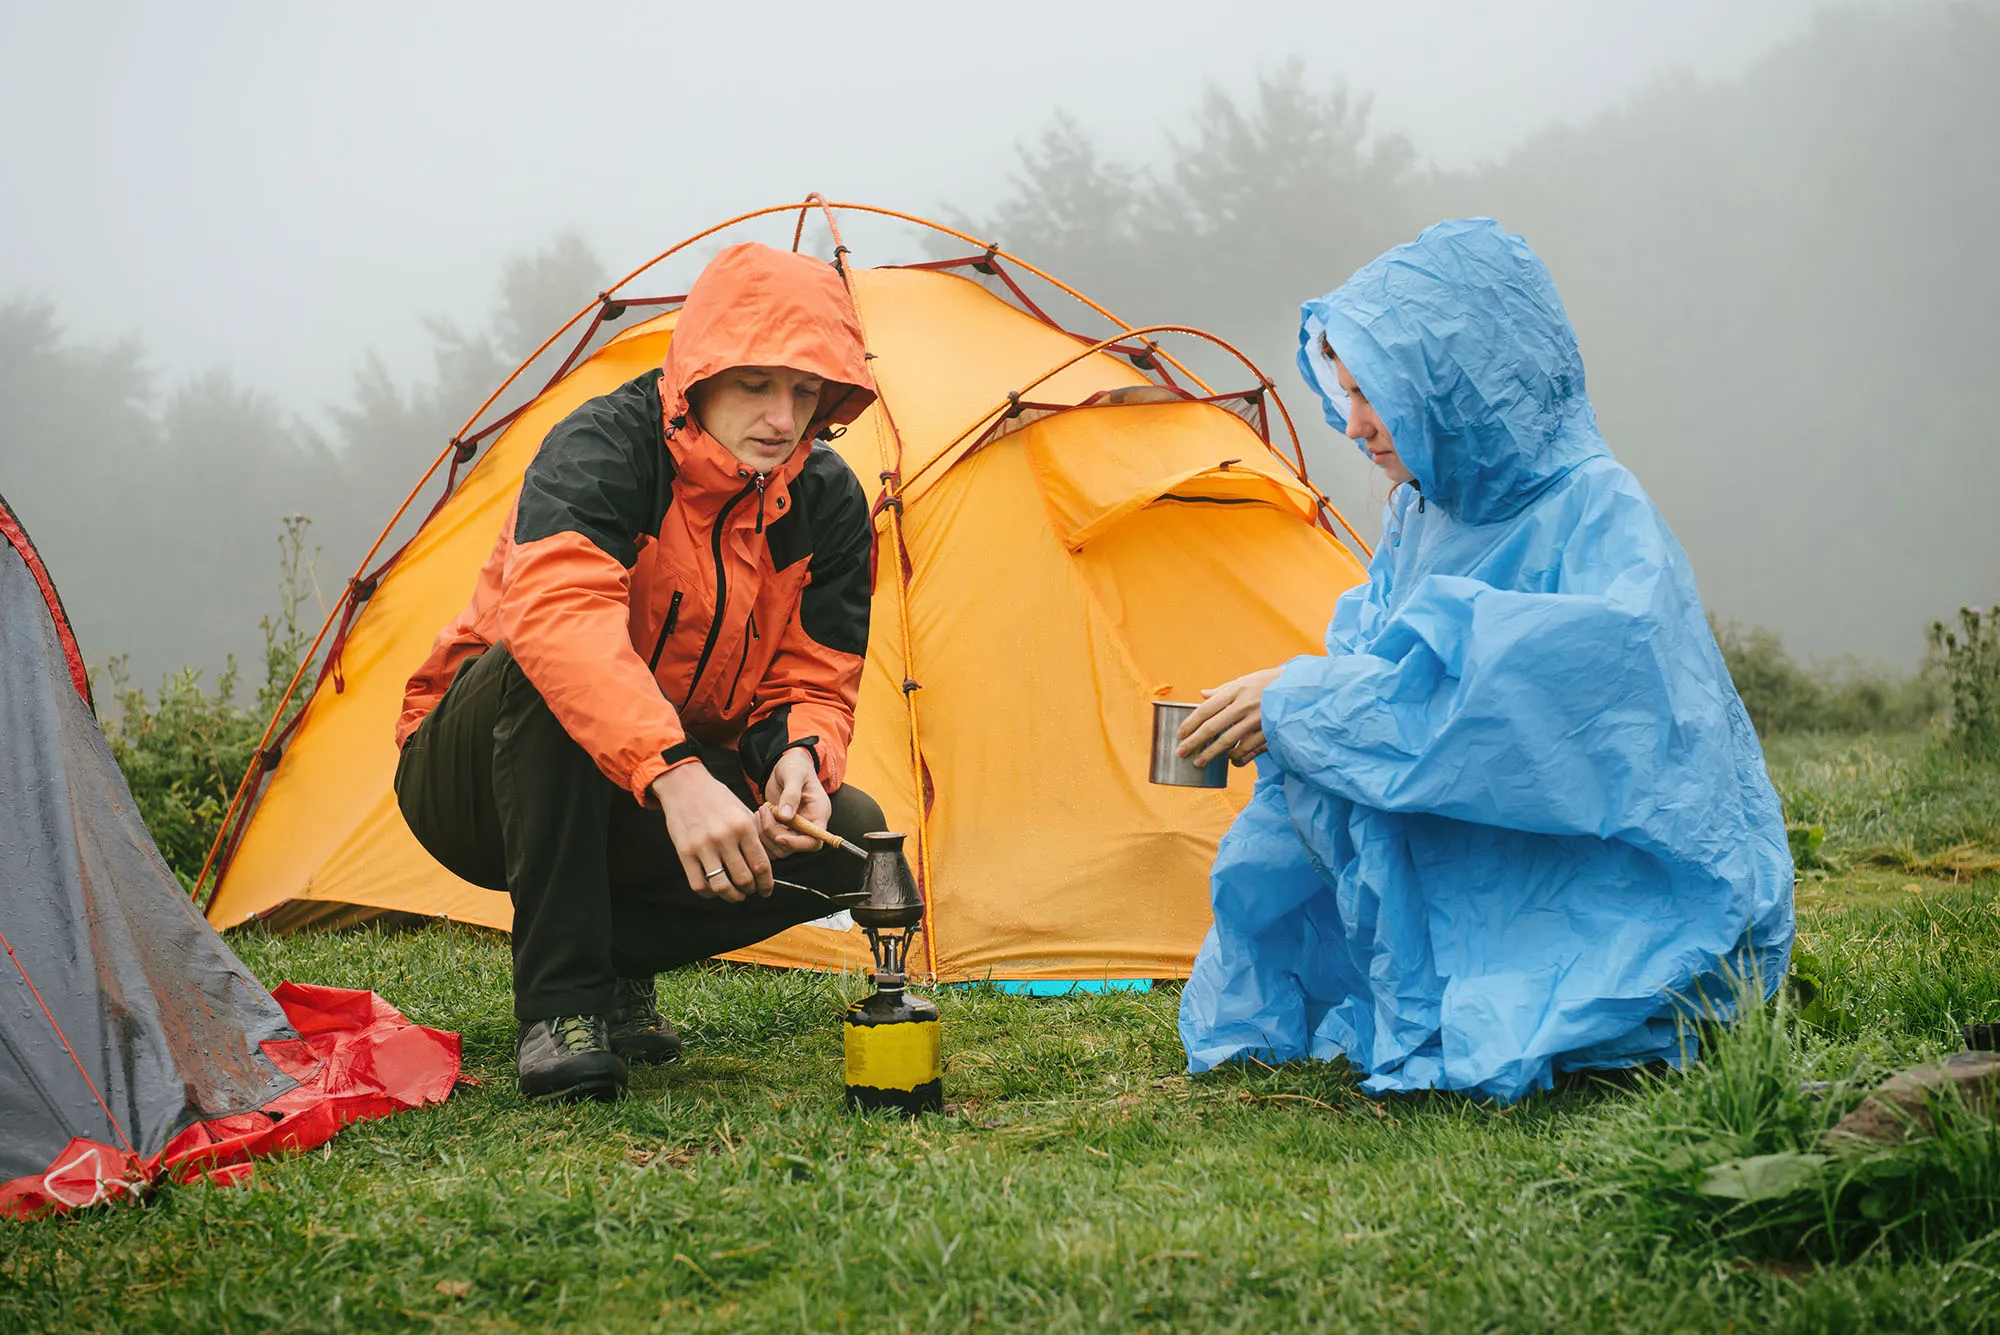 Yağmurda Kamp Yapmak İçin 7 İpucu – Sizi Kuru Tutacak Fikirler